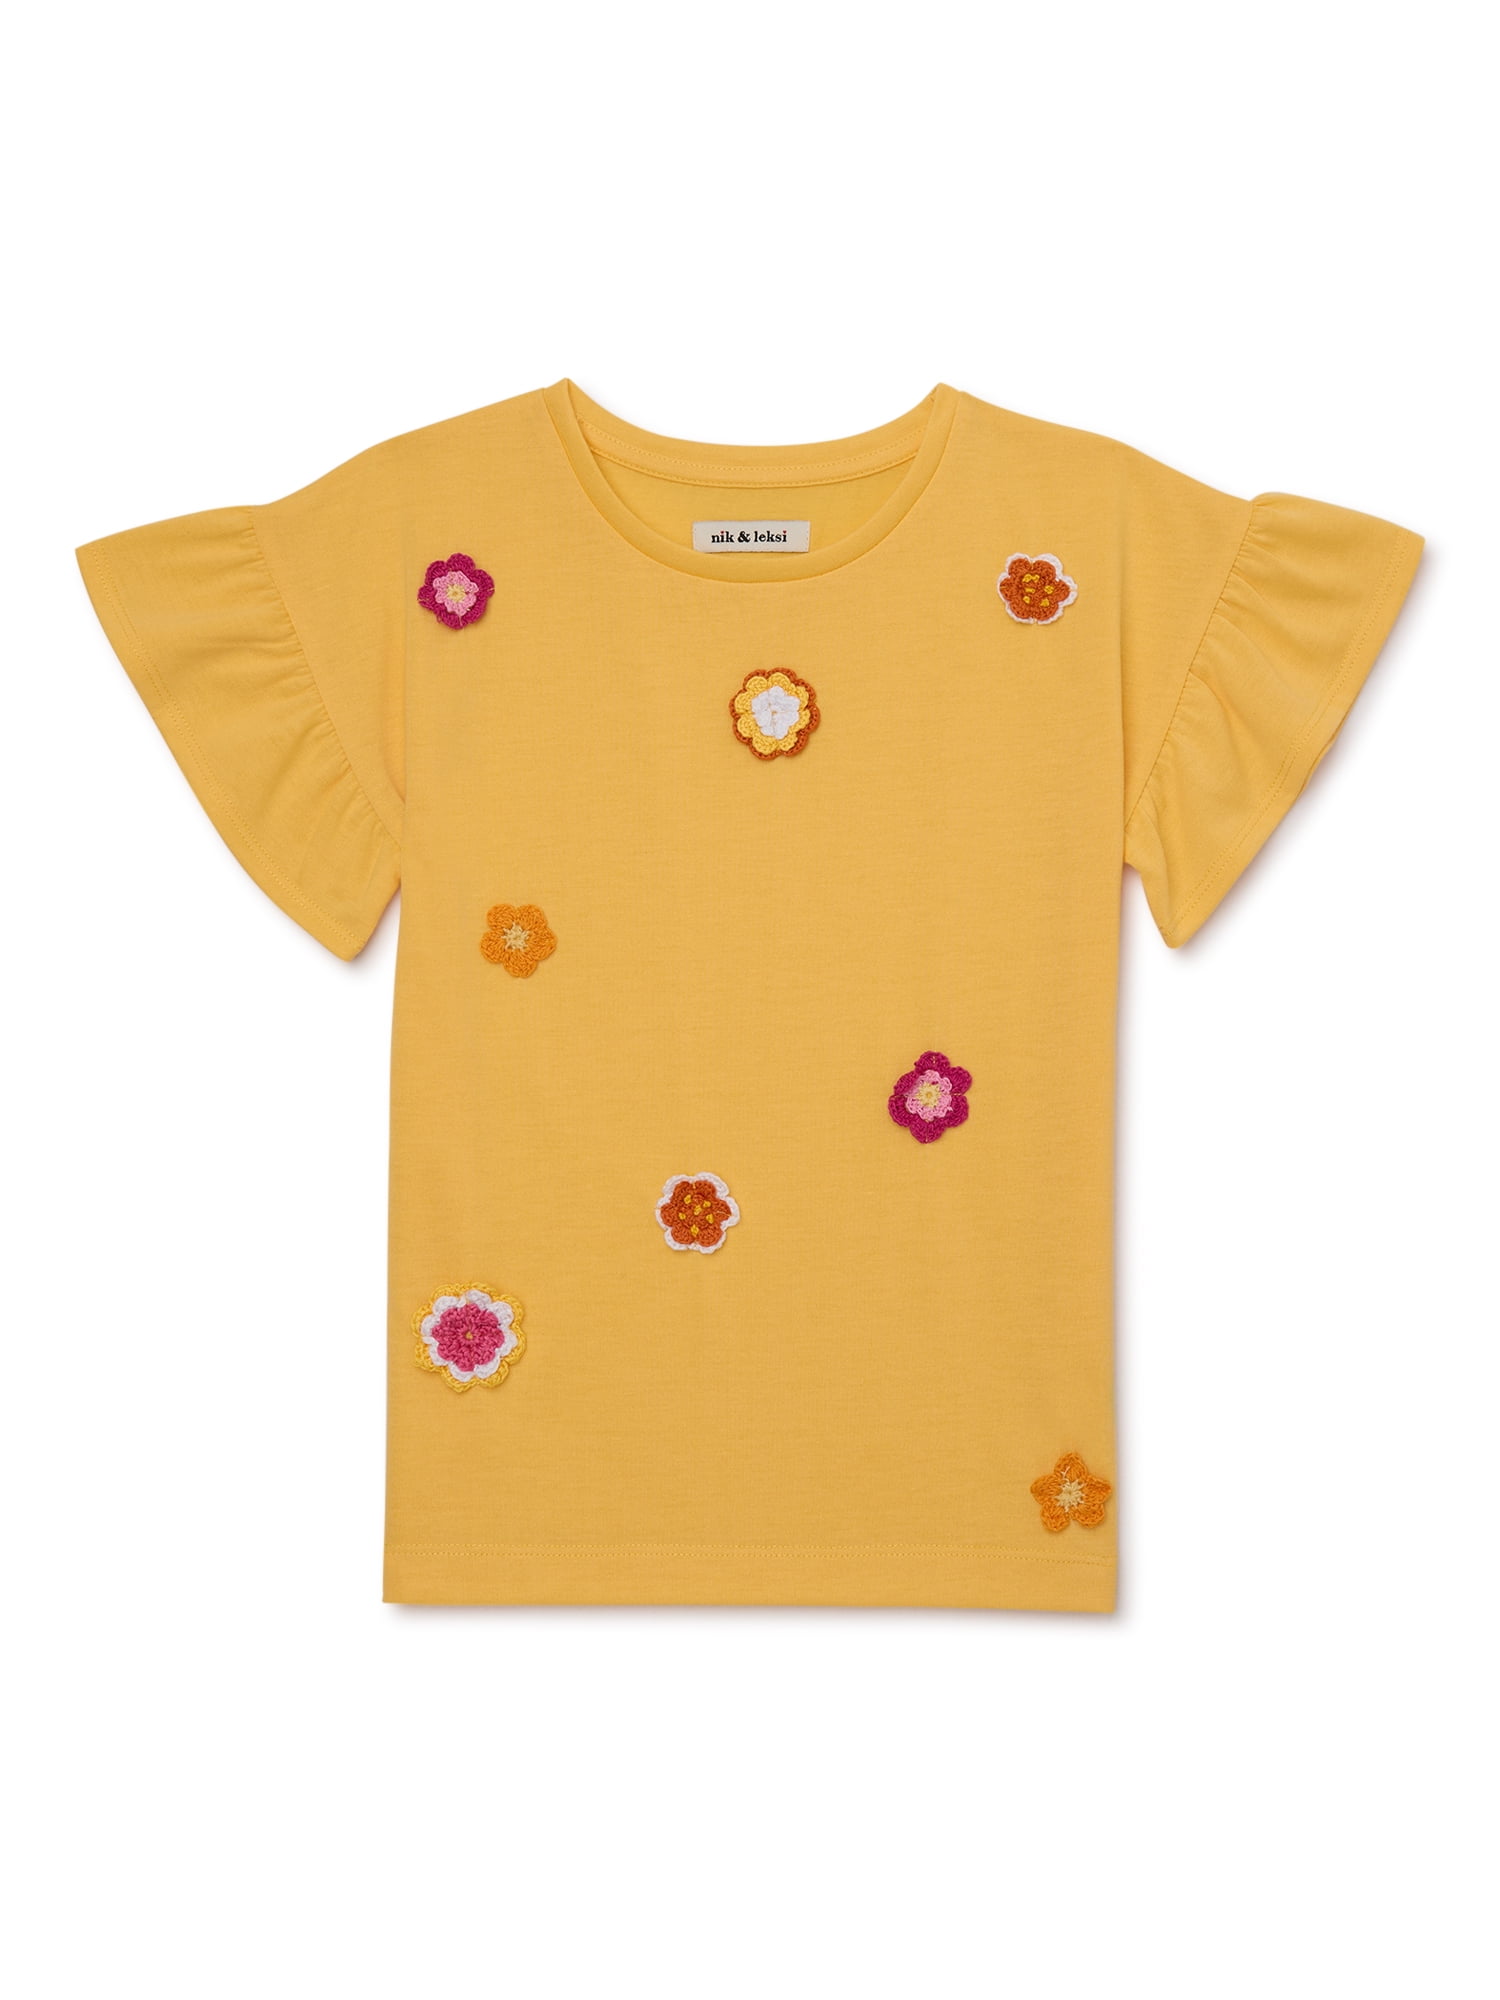 Nik & Leksi Girls Ruffle Sleeve Crochet Flower T-Shirt, Sizes 4-16 